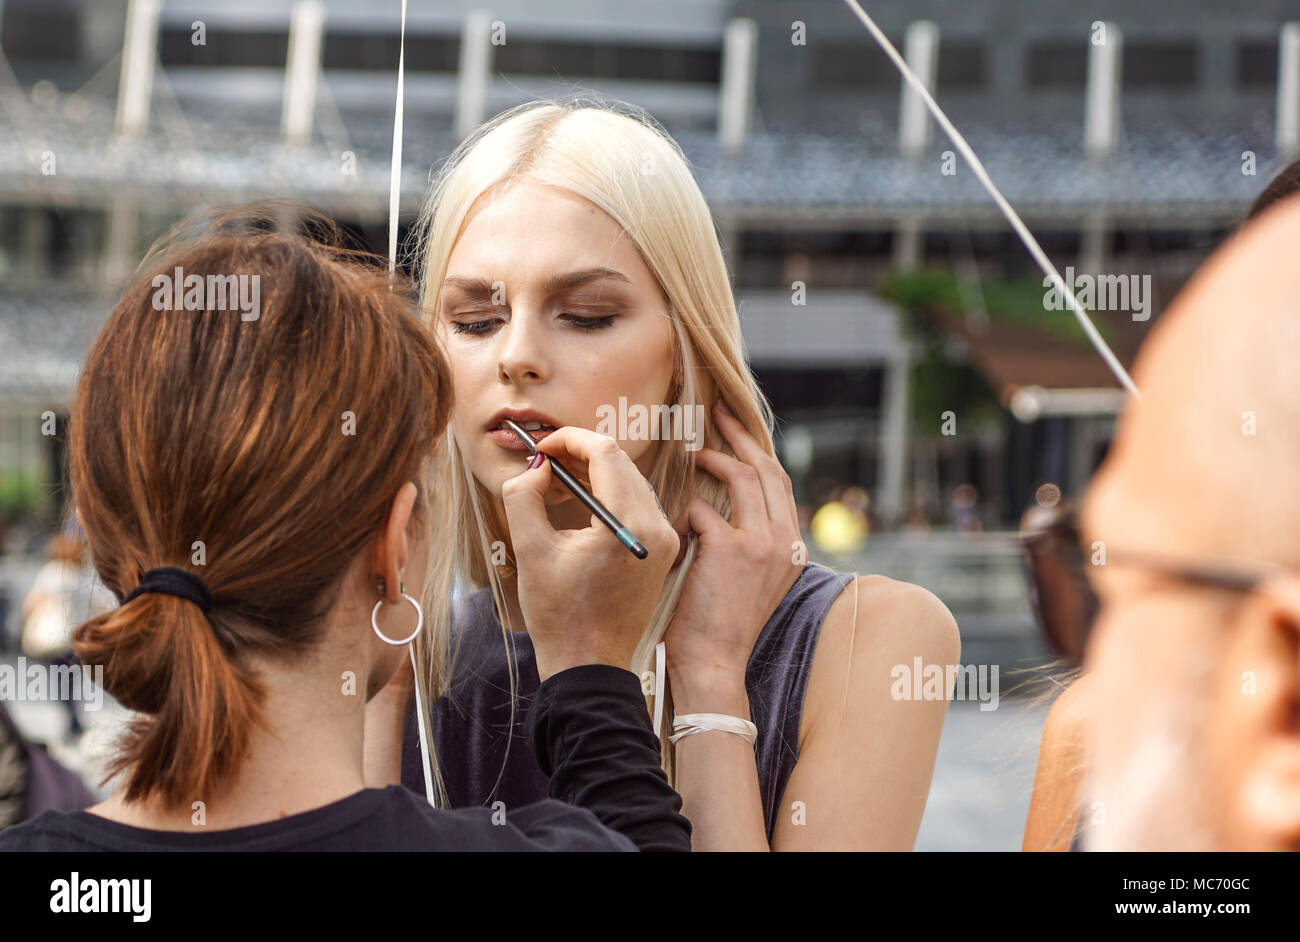 MILAN, ITALIE - 28 SEPTEMBRE : les gens pendant la semaine de la mode de Milan, Italie Le 28 septembre 2017. Fashion Show Backstage avec maquilleur et coiffeur dans la rue Banque D'Images